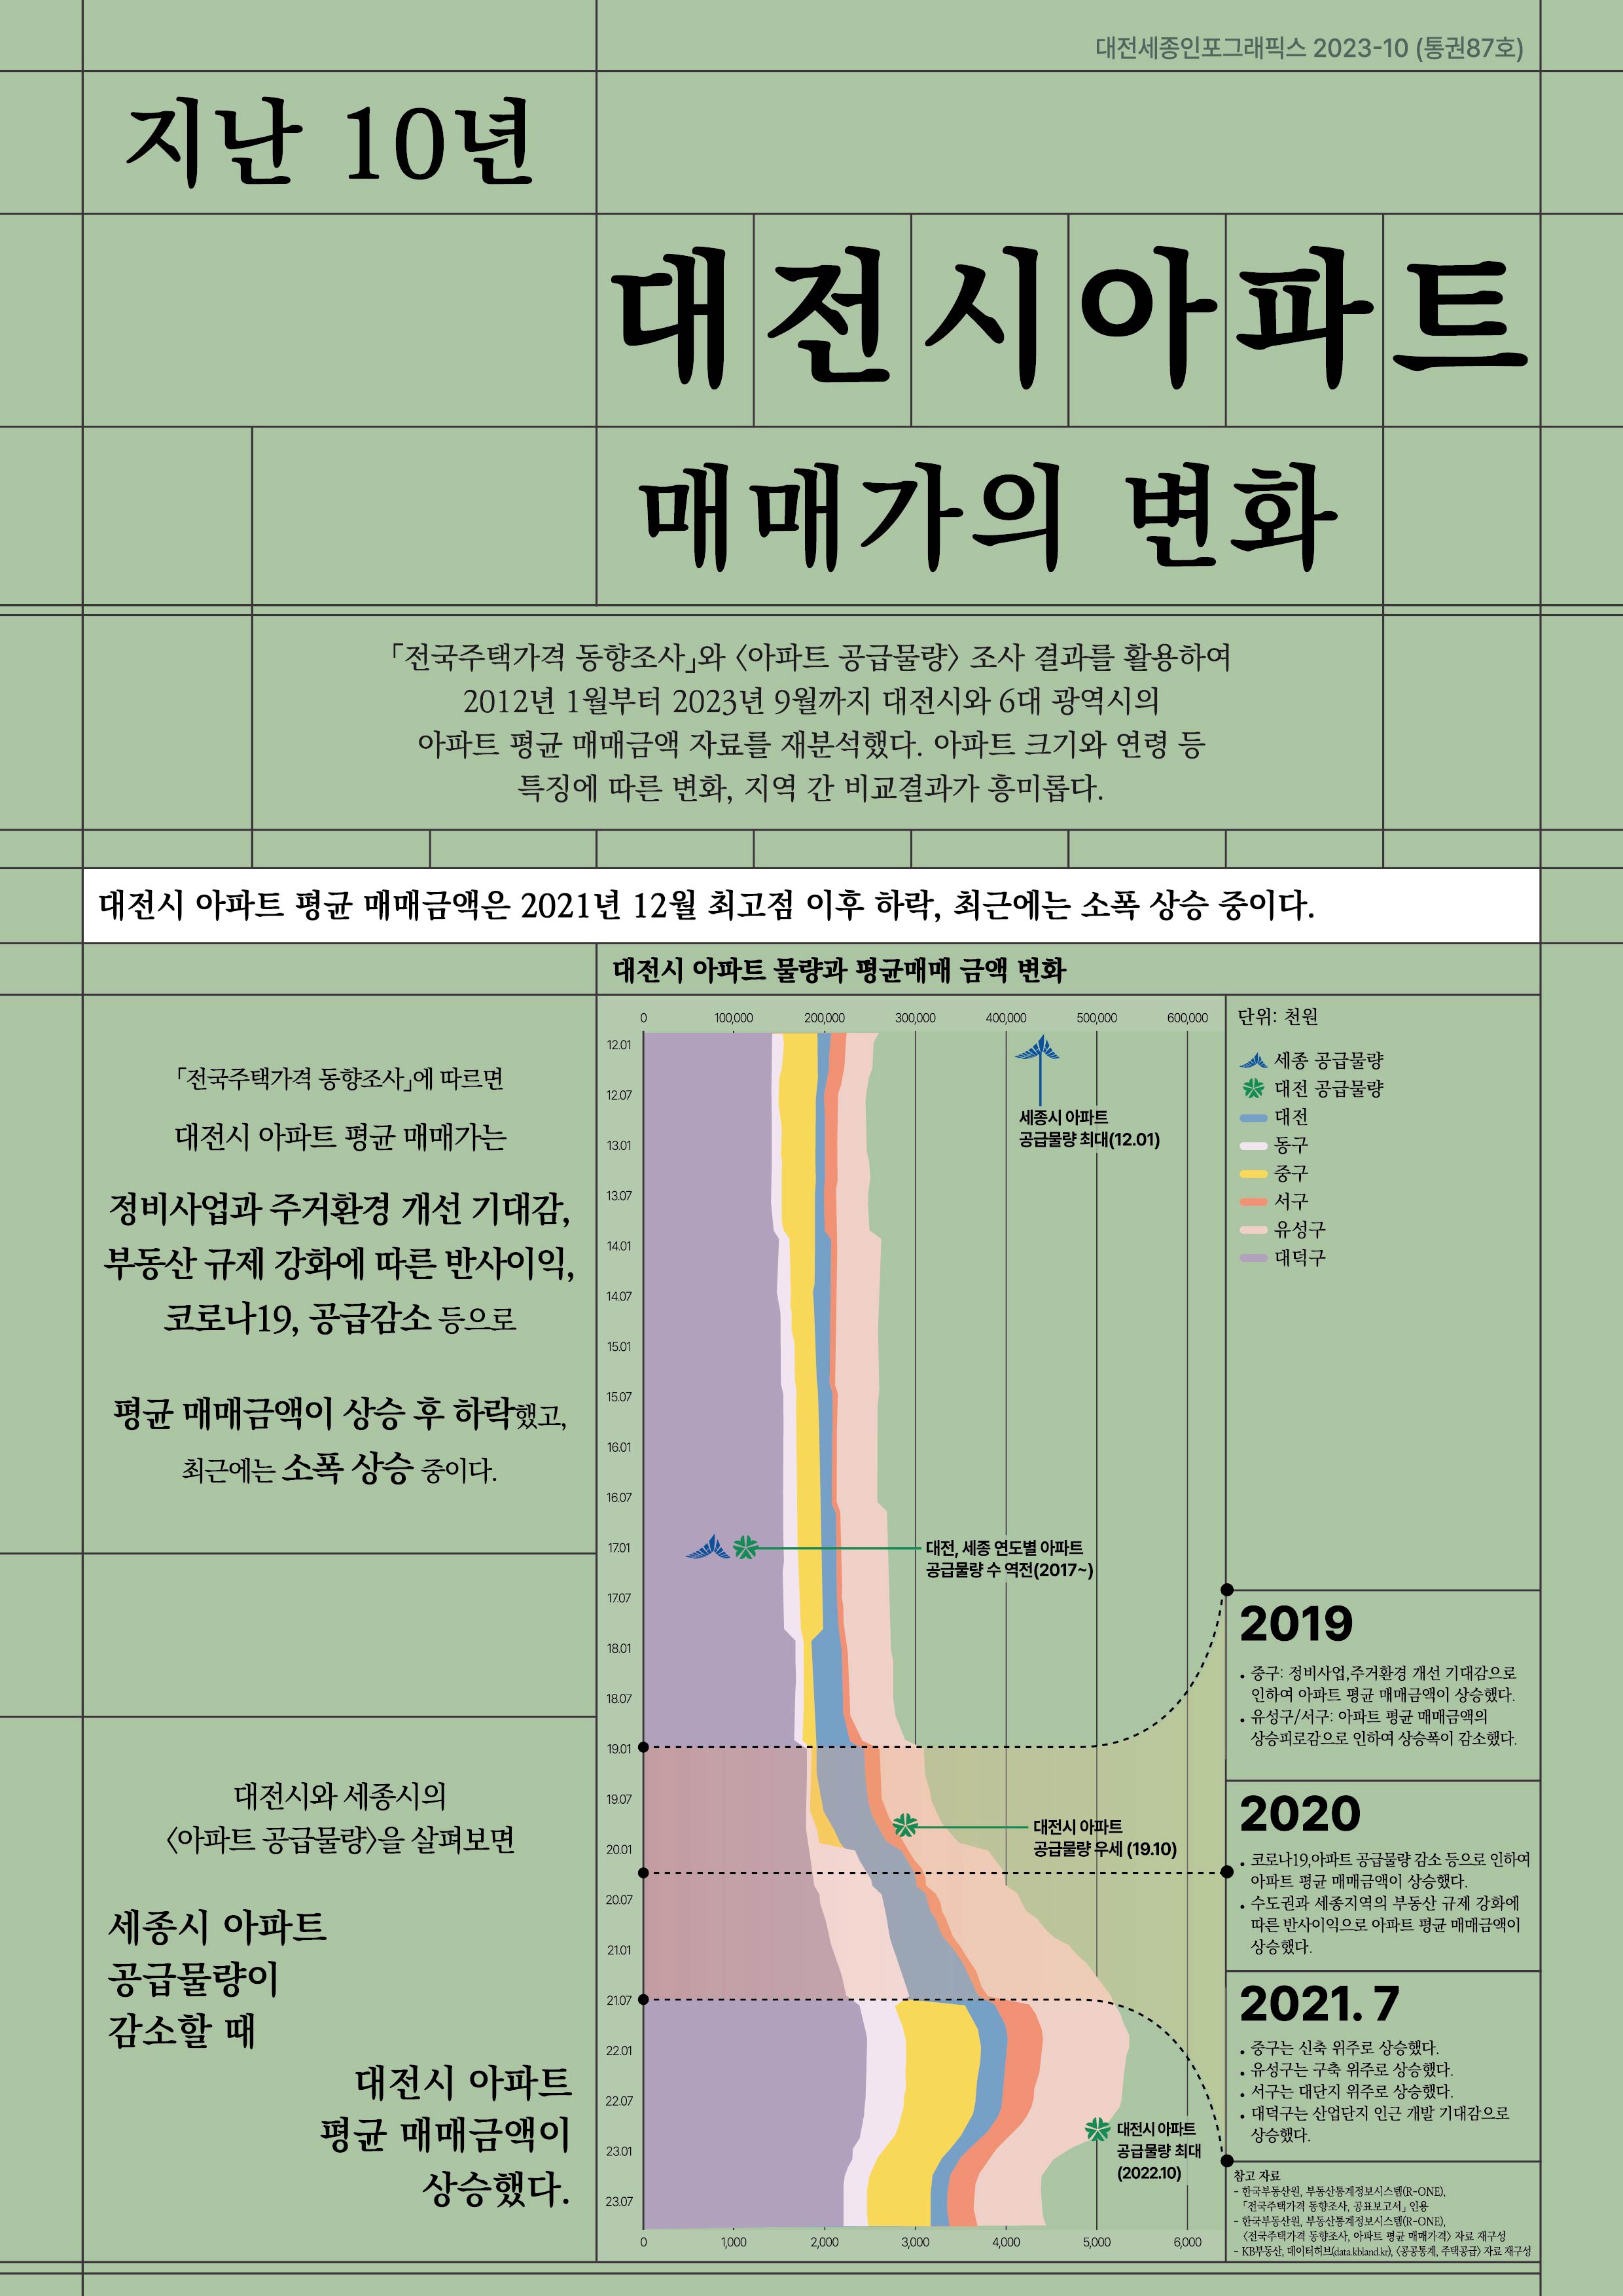 대전세종인포그래픽스 87호: 지난 10년간 대전시 아파트 매매가의 변화